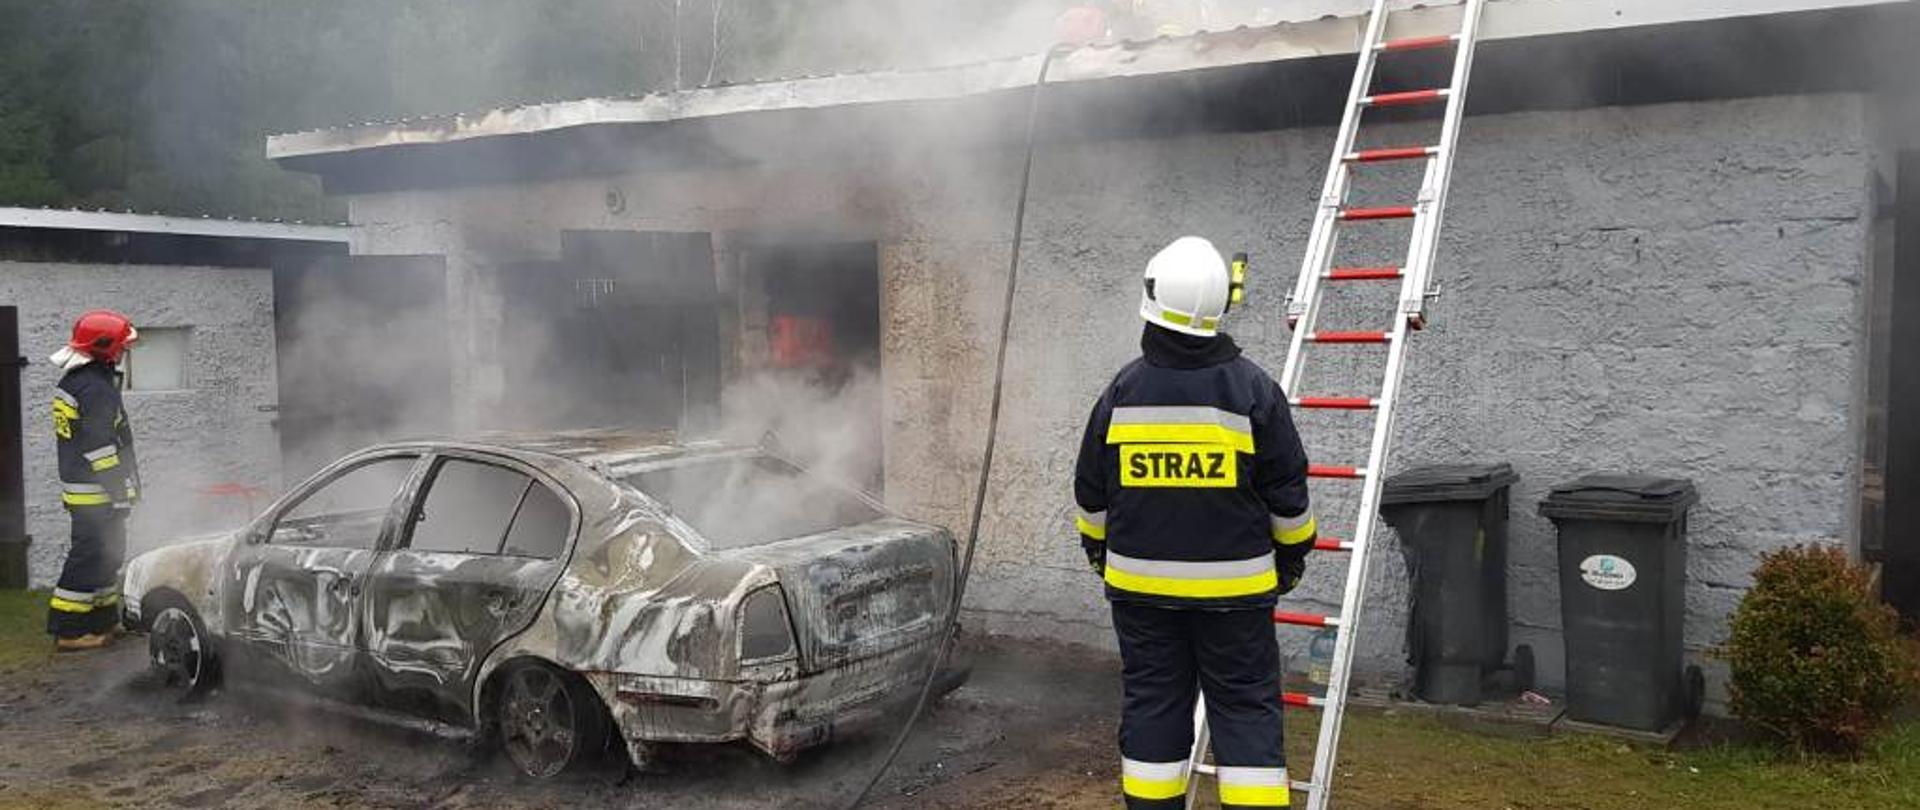 Na tle budynku widać dwóch strażaków stojących koło spalonego samochodu osobowego. Strażak stojący z prawej strony zabezpiecza drabinę opartą o dach budynku. 